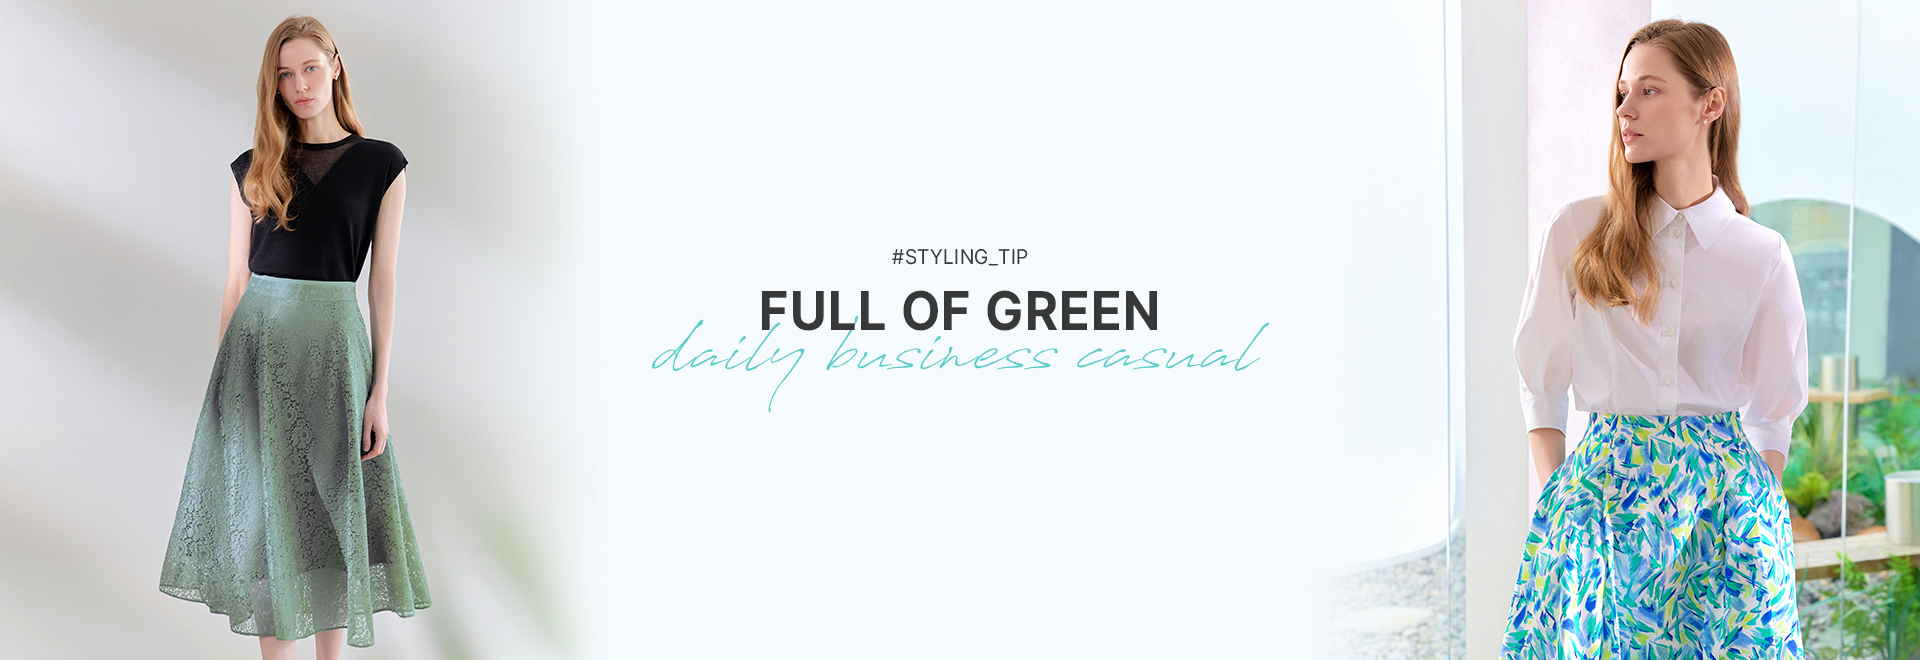 FULL OF GREEN